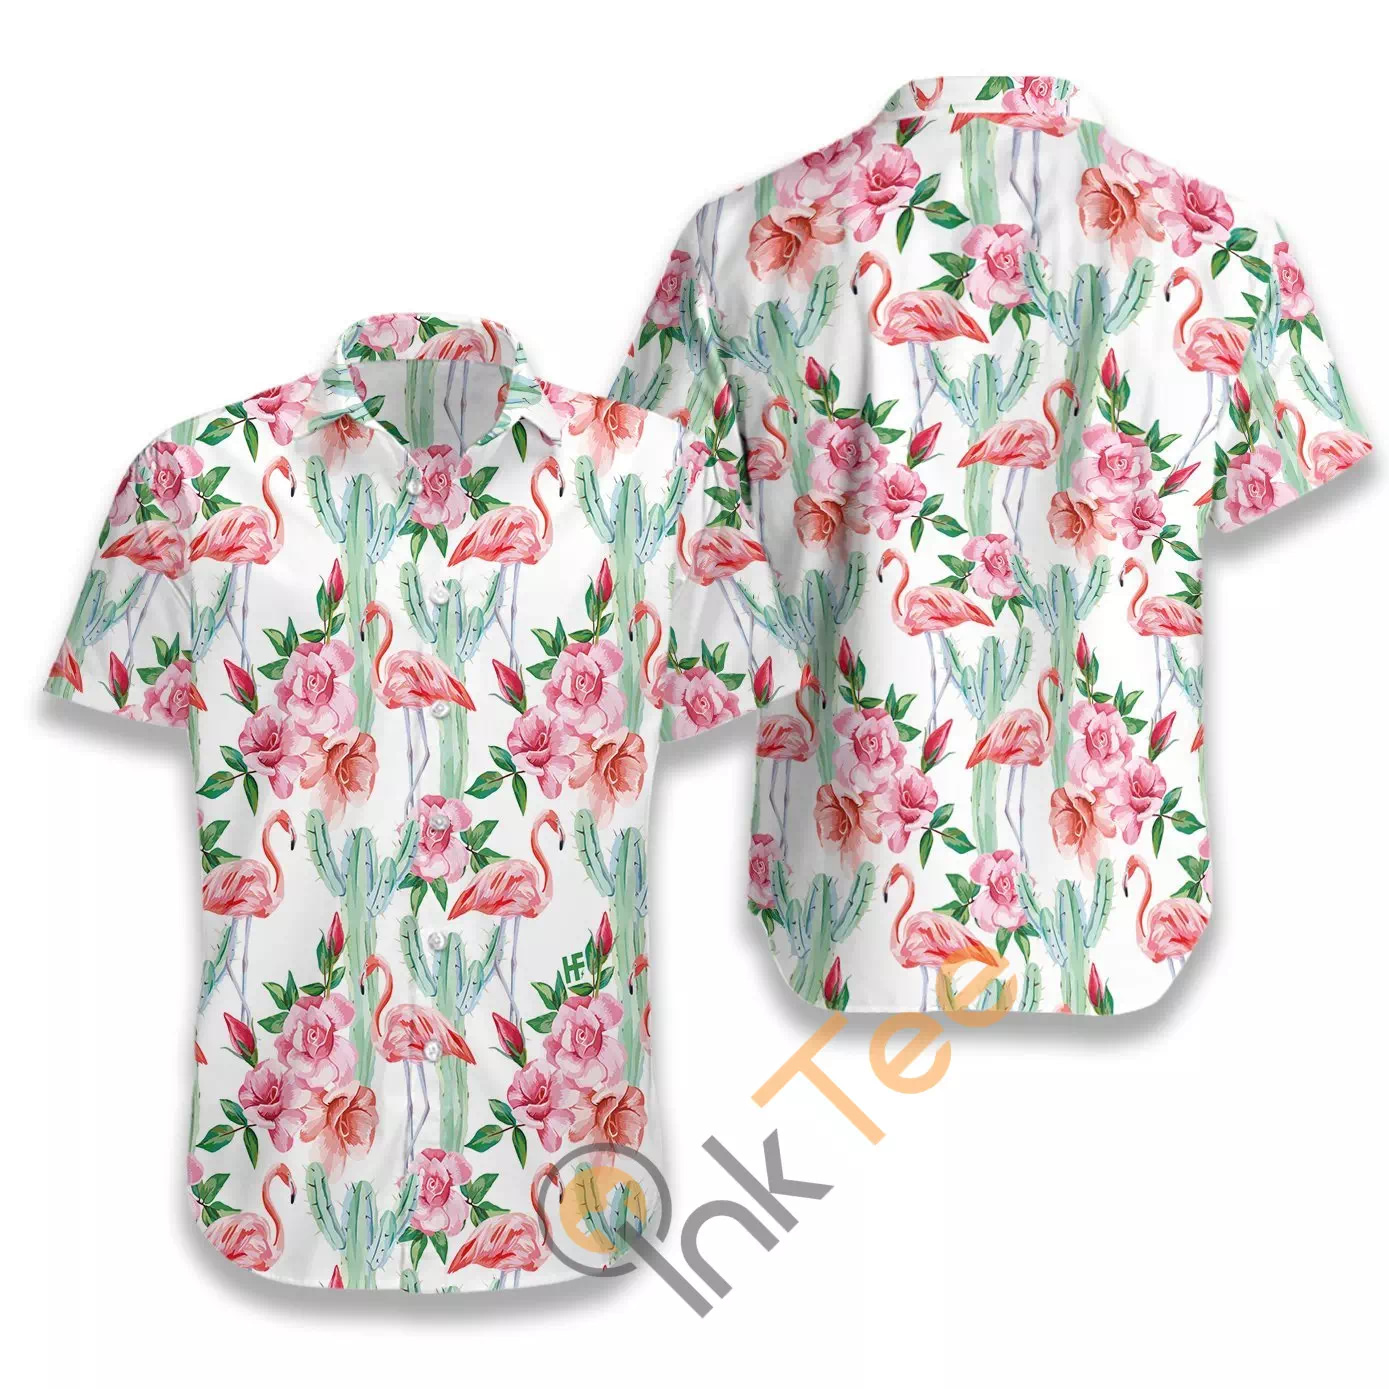 Tropical Flamingo 01 N835 Hawaiian shirts